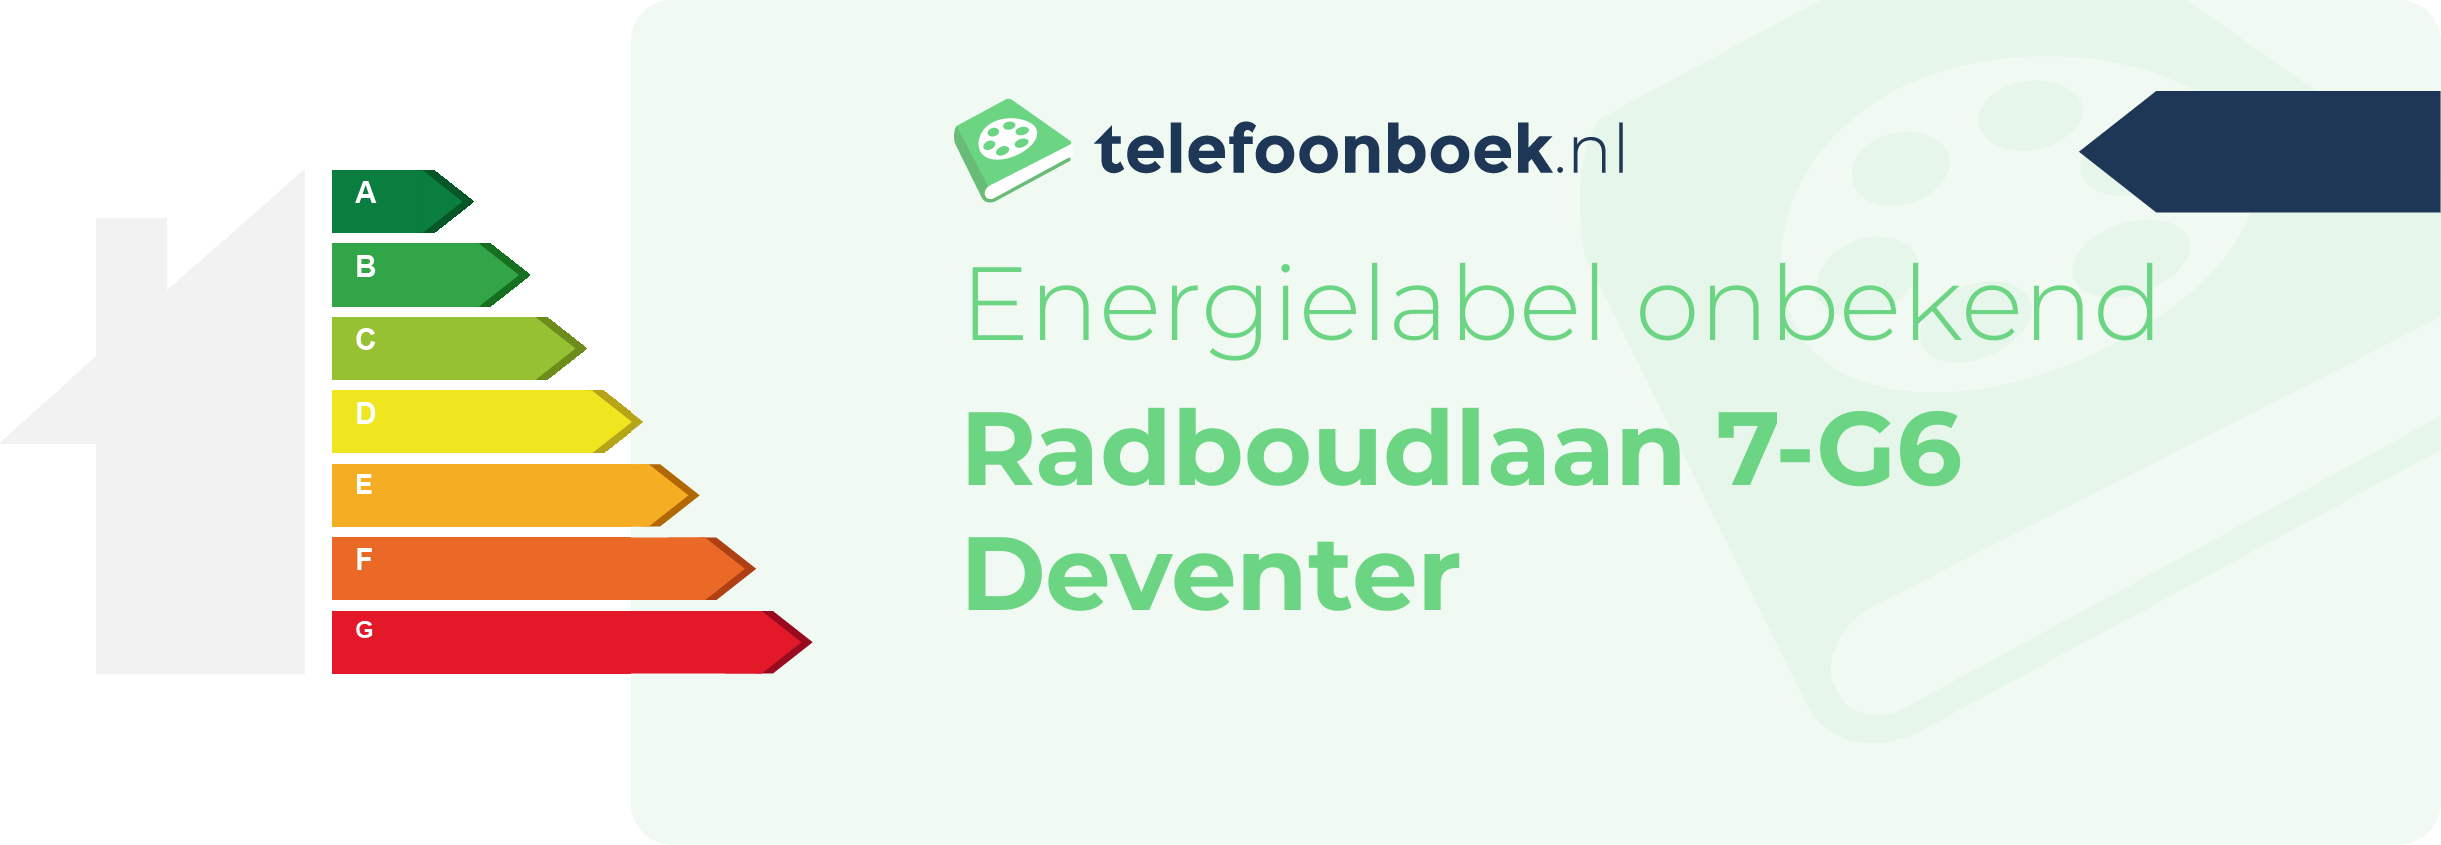 Energielabel Radboudlaan 7-G6 Deventer